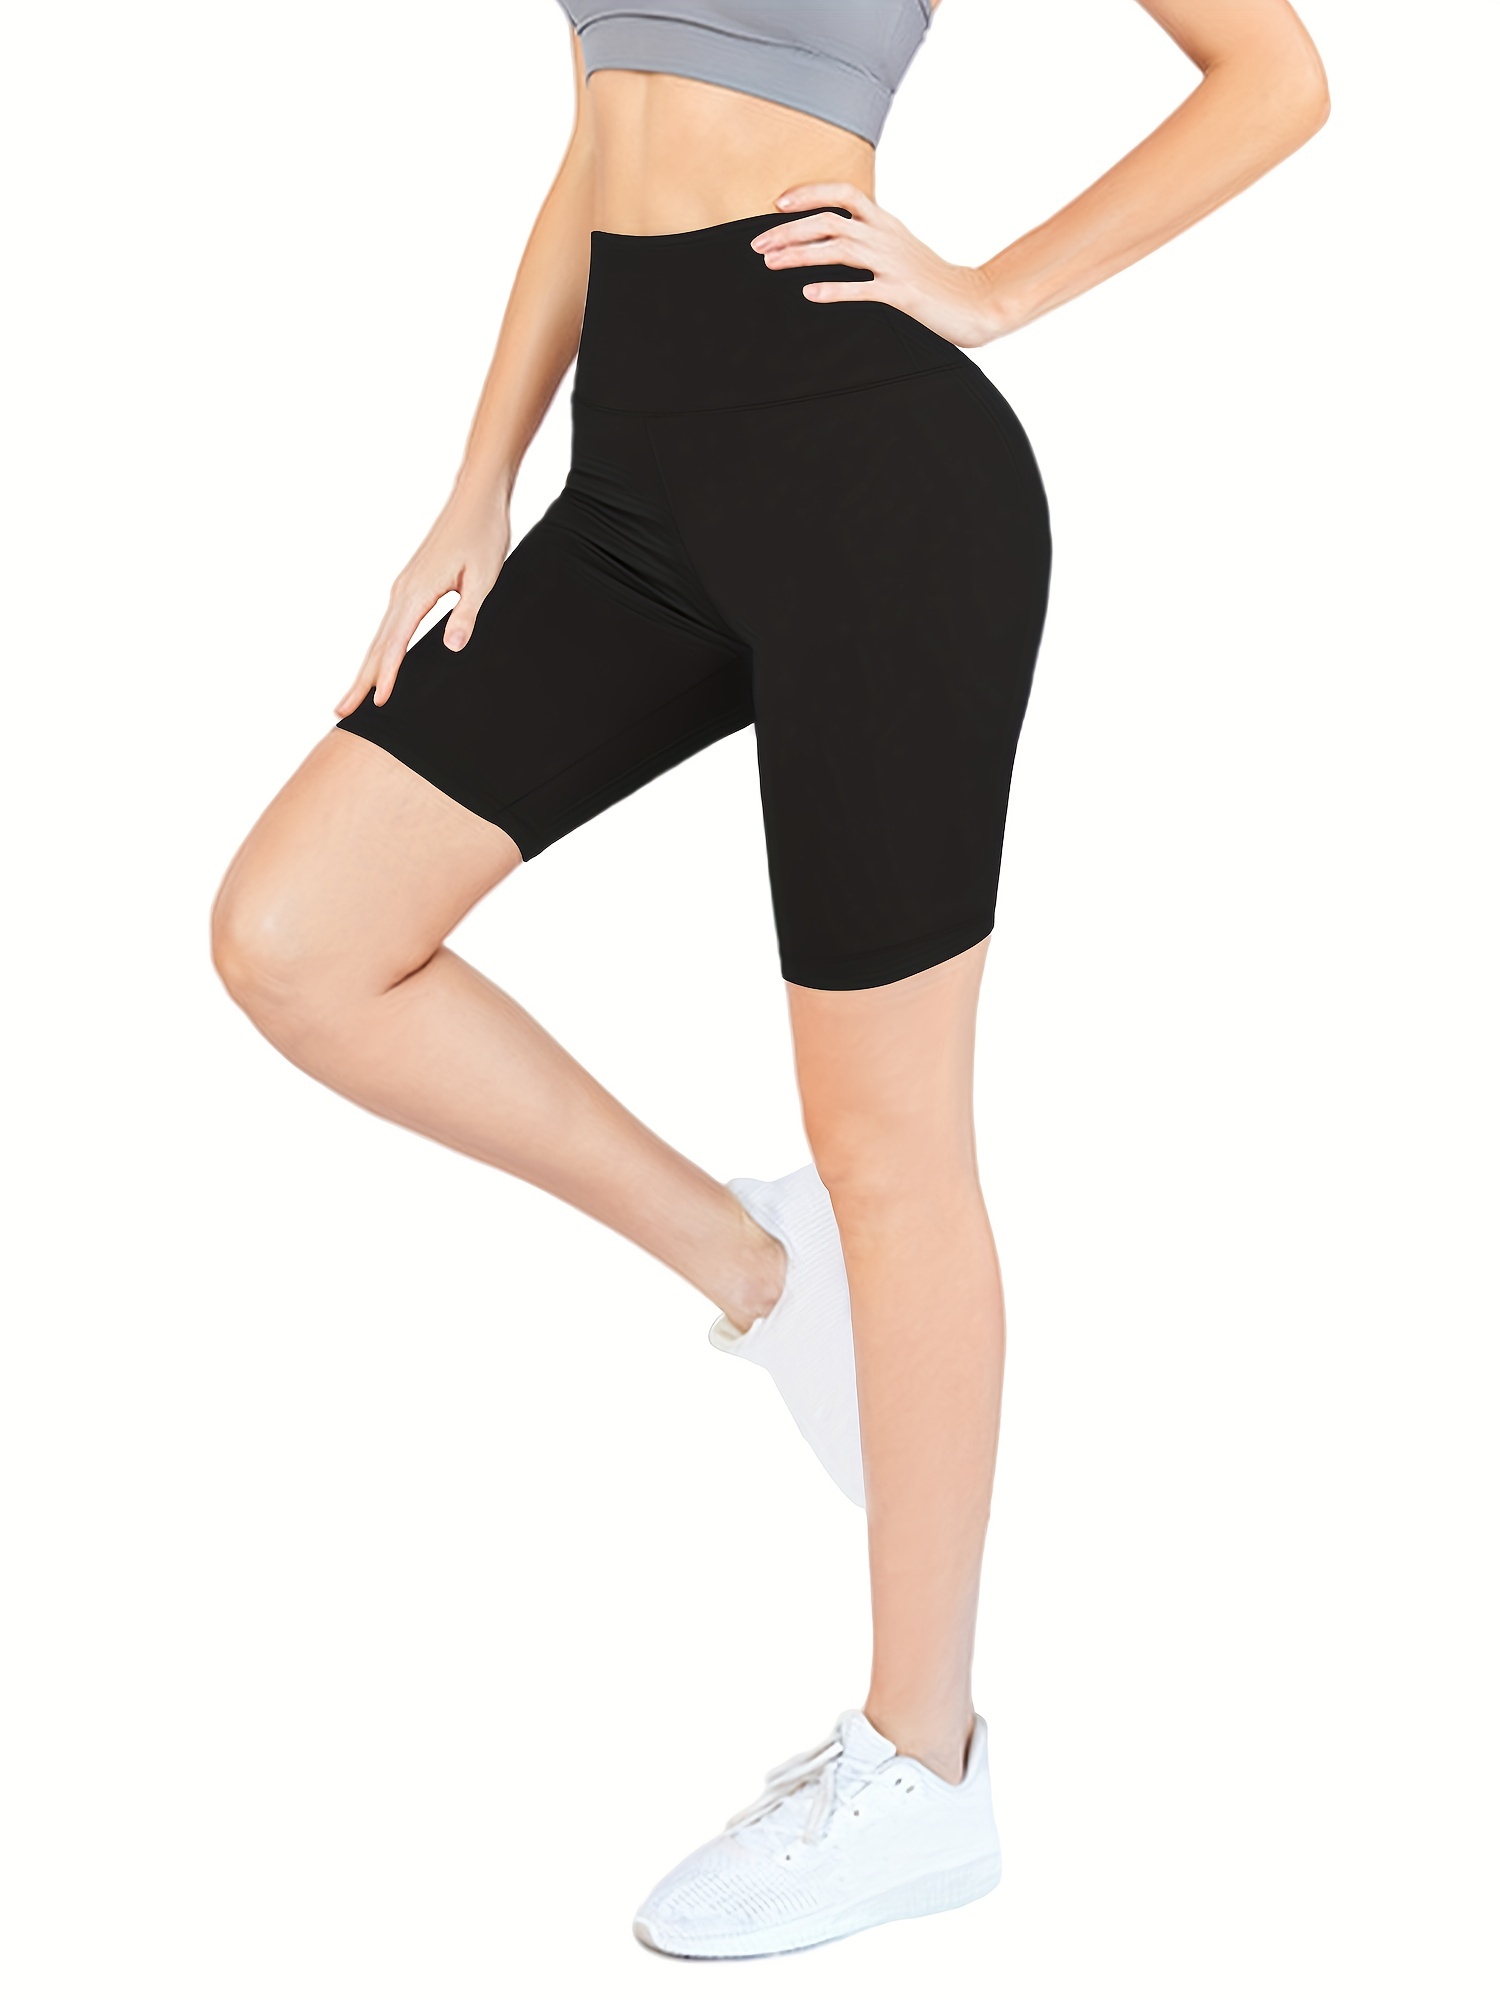 Leggings de cintura alta para mujer, mallas deportivas negras para mujer,  mallas deportivas ajustadas para entrenamiento Tan Jianjun unisex